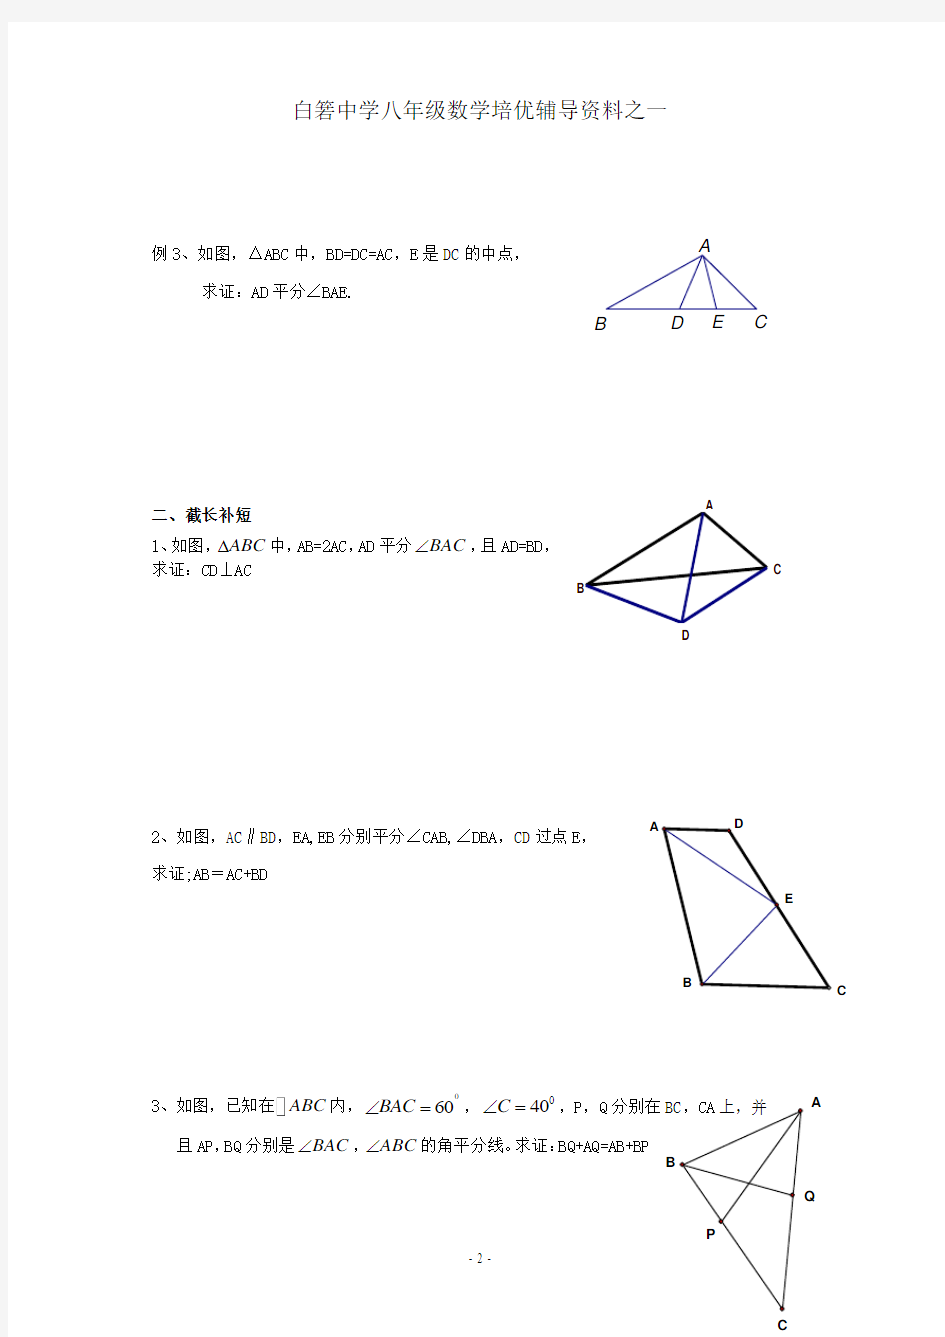 辅导资料：全等三角形问题中常见的辅助线的作法